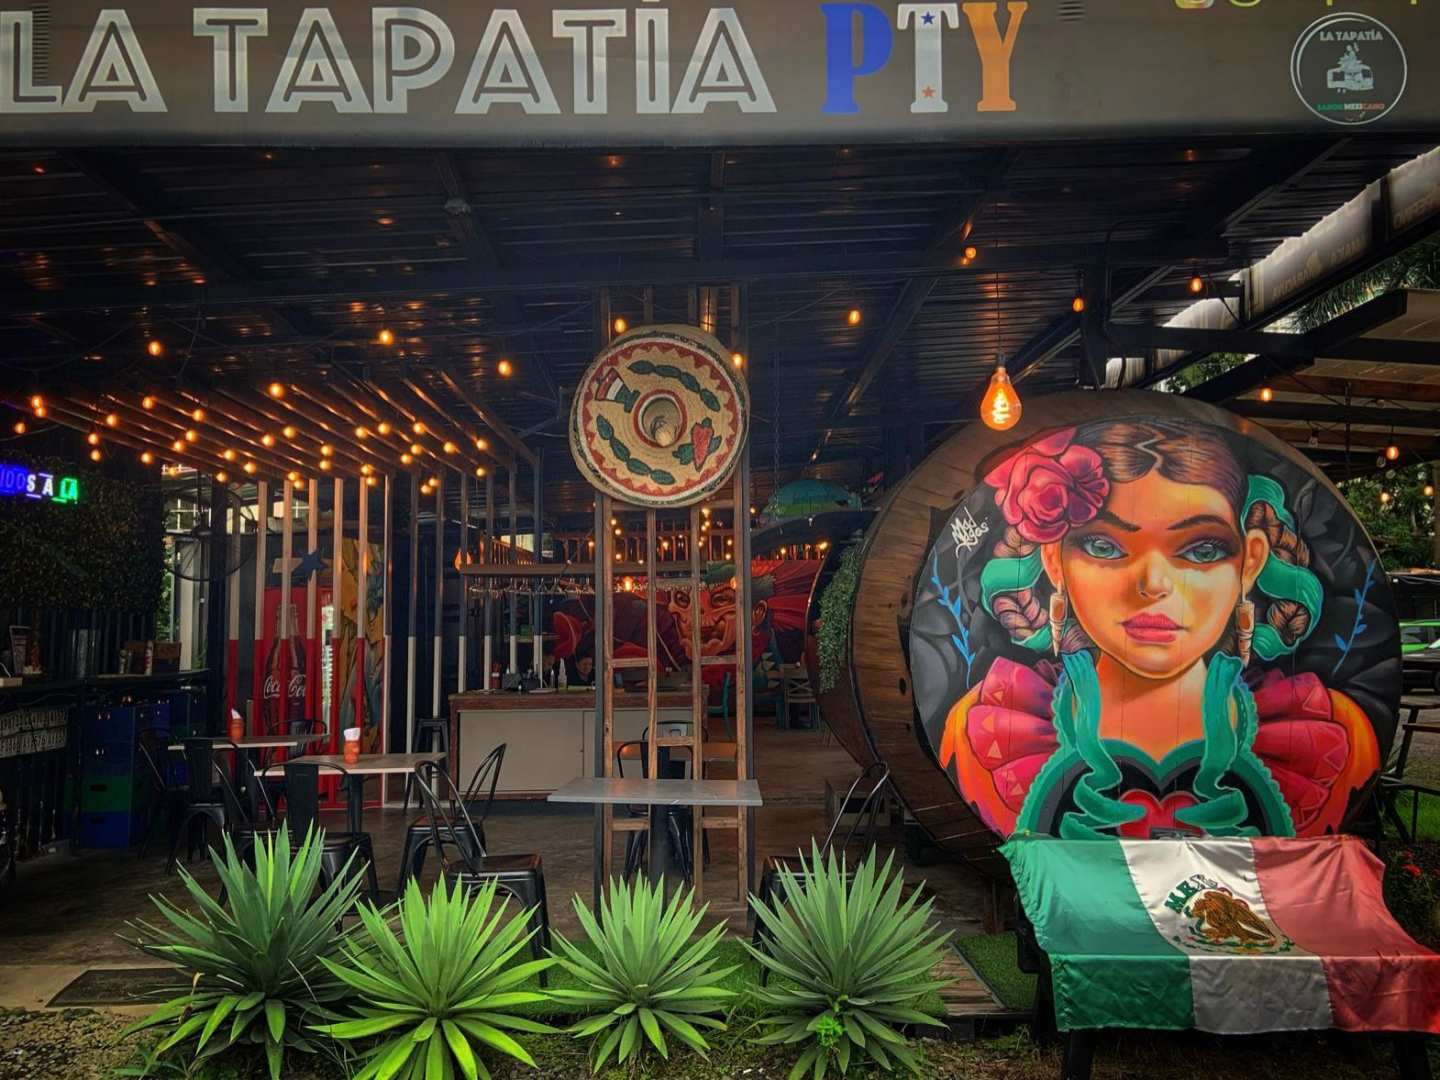 La Tapatia Pty